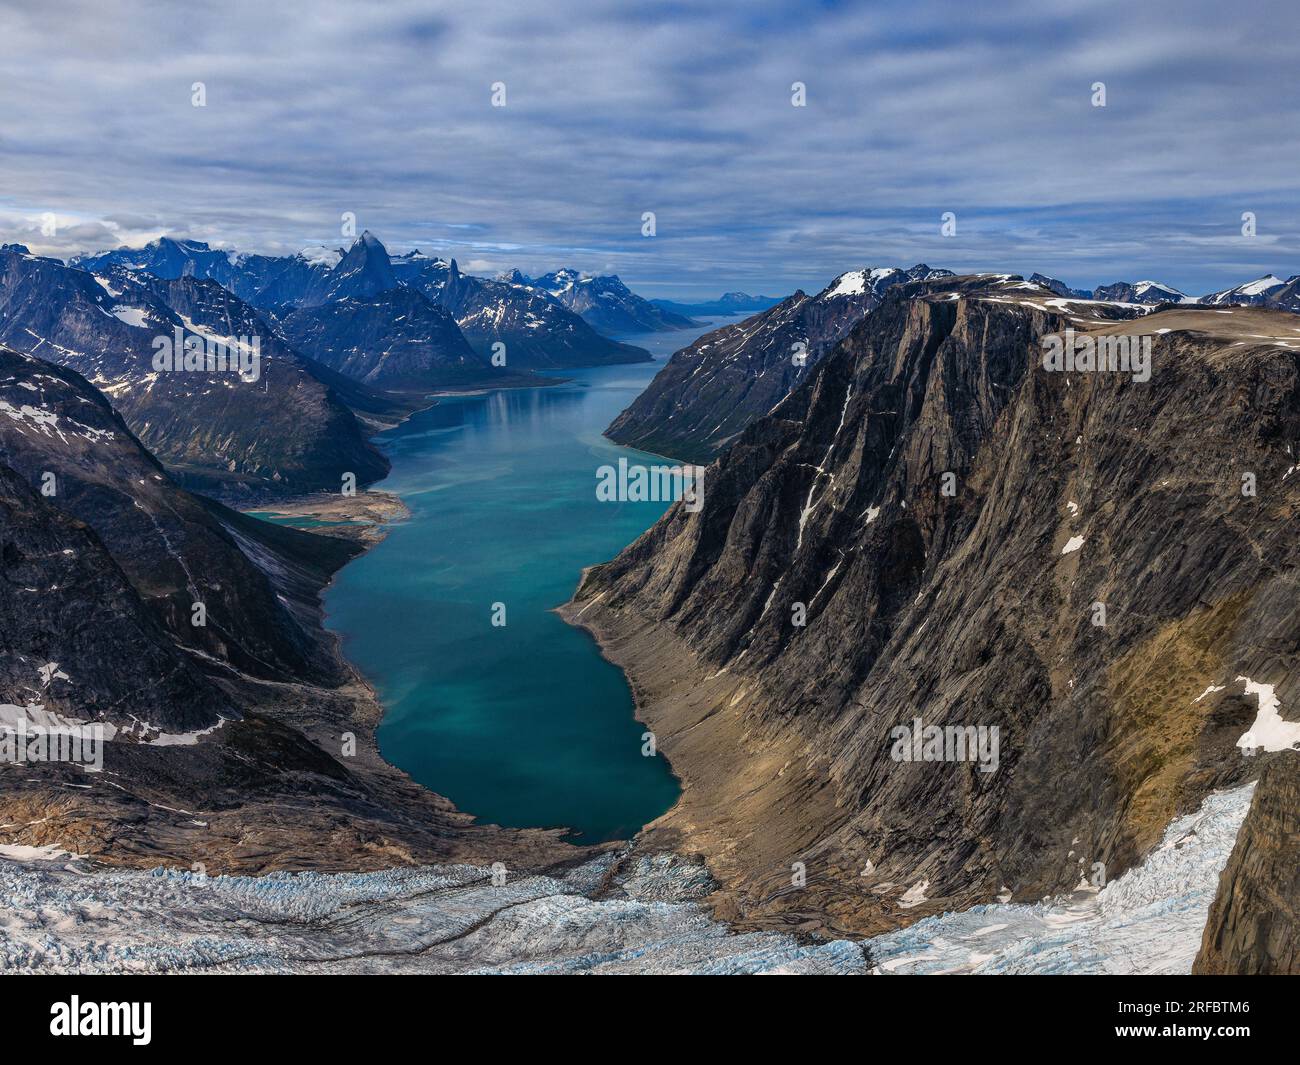 foto aerea dall'alto del ghiacciaio alla testa del fiordo di tasermiut in groenlandia con montagne rocciose che torreggiano sull'acqua del fiordo blu Foto Stock